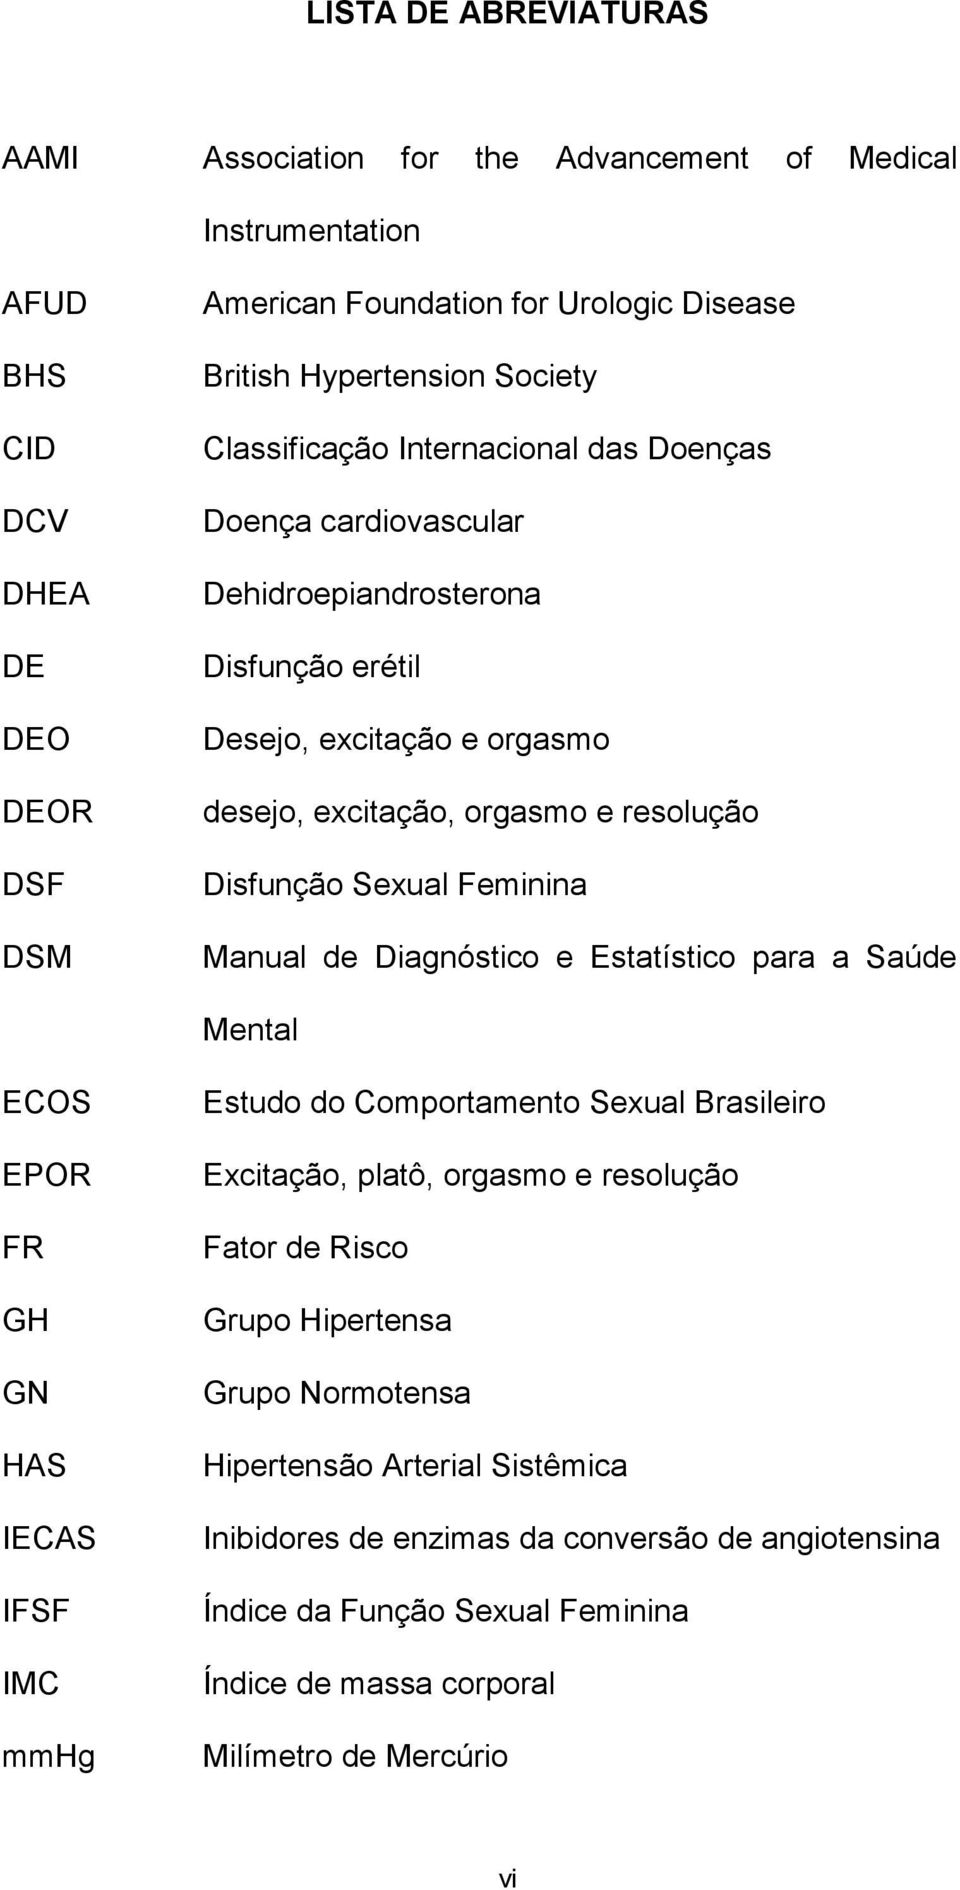 Feminina Manual de Diagnóstico e Estatístico para a Saúde Mental ECOS EPOR FR GH GN HAS IECAS IFSF IMC mmhg Estudo do Comportamento Sexual Brasileiro Excitação, platô, orgasmo e resolução Fator de